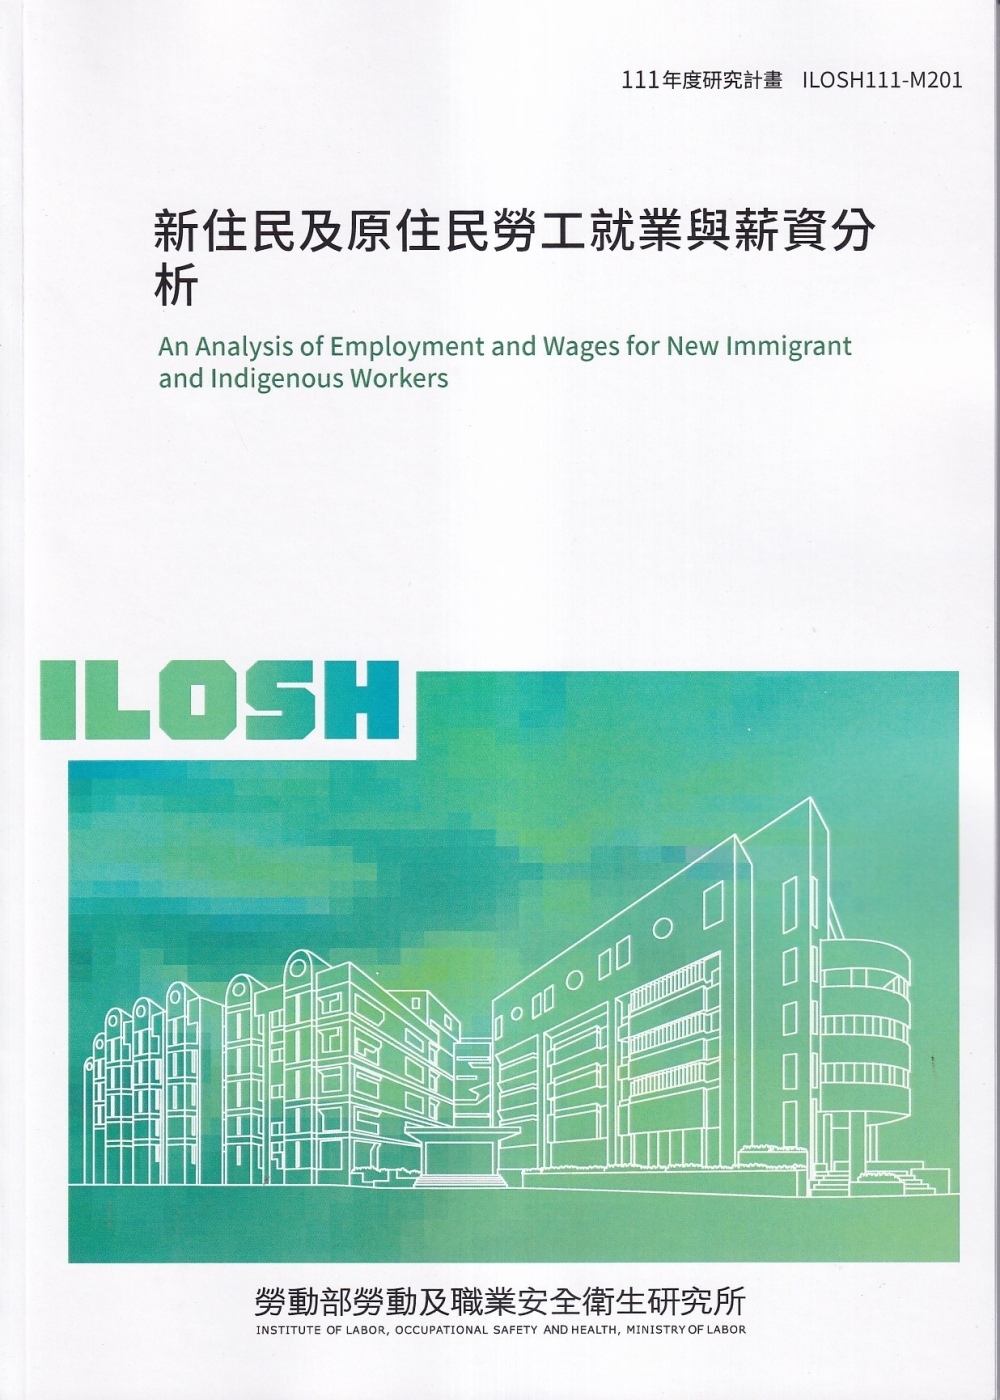 新住民及原住民勞工就業與薪資分析ILOSH111-M301